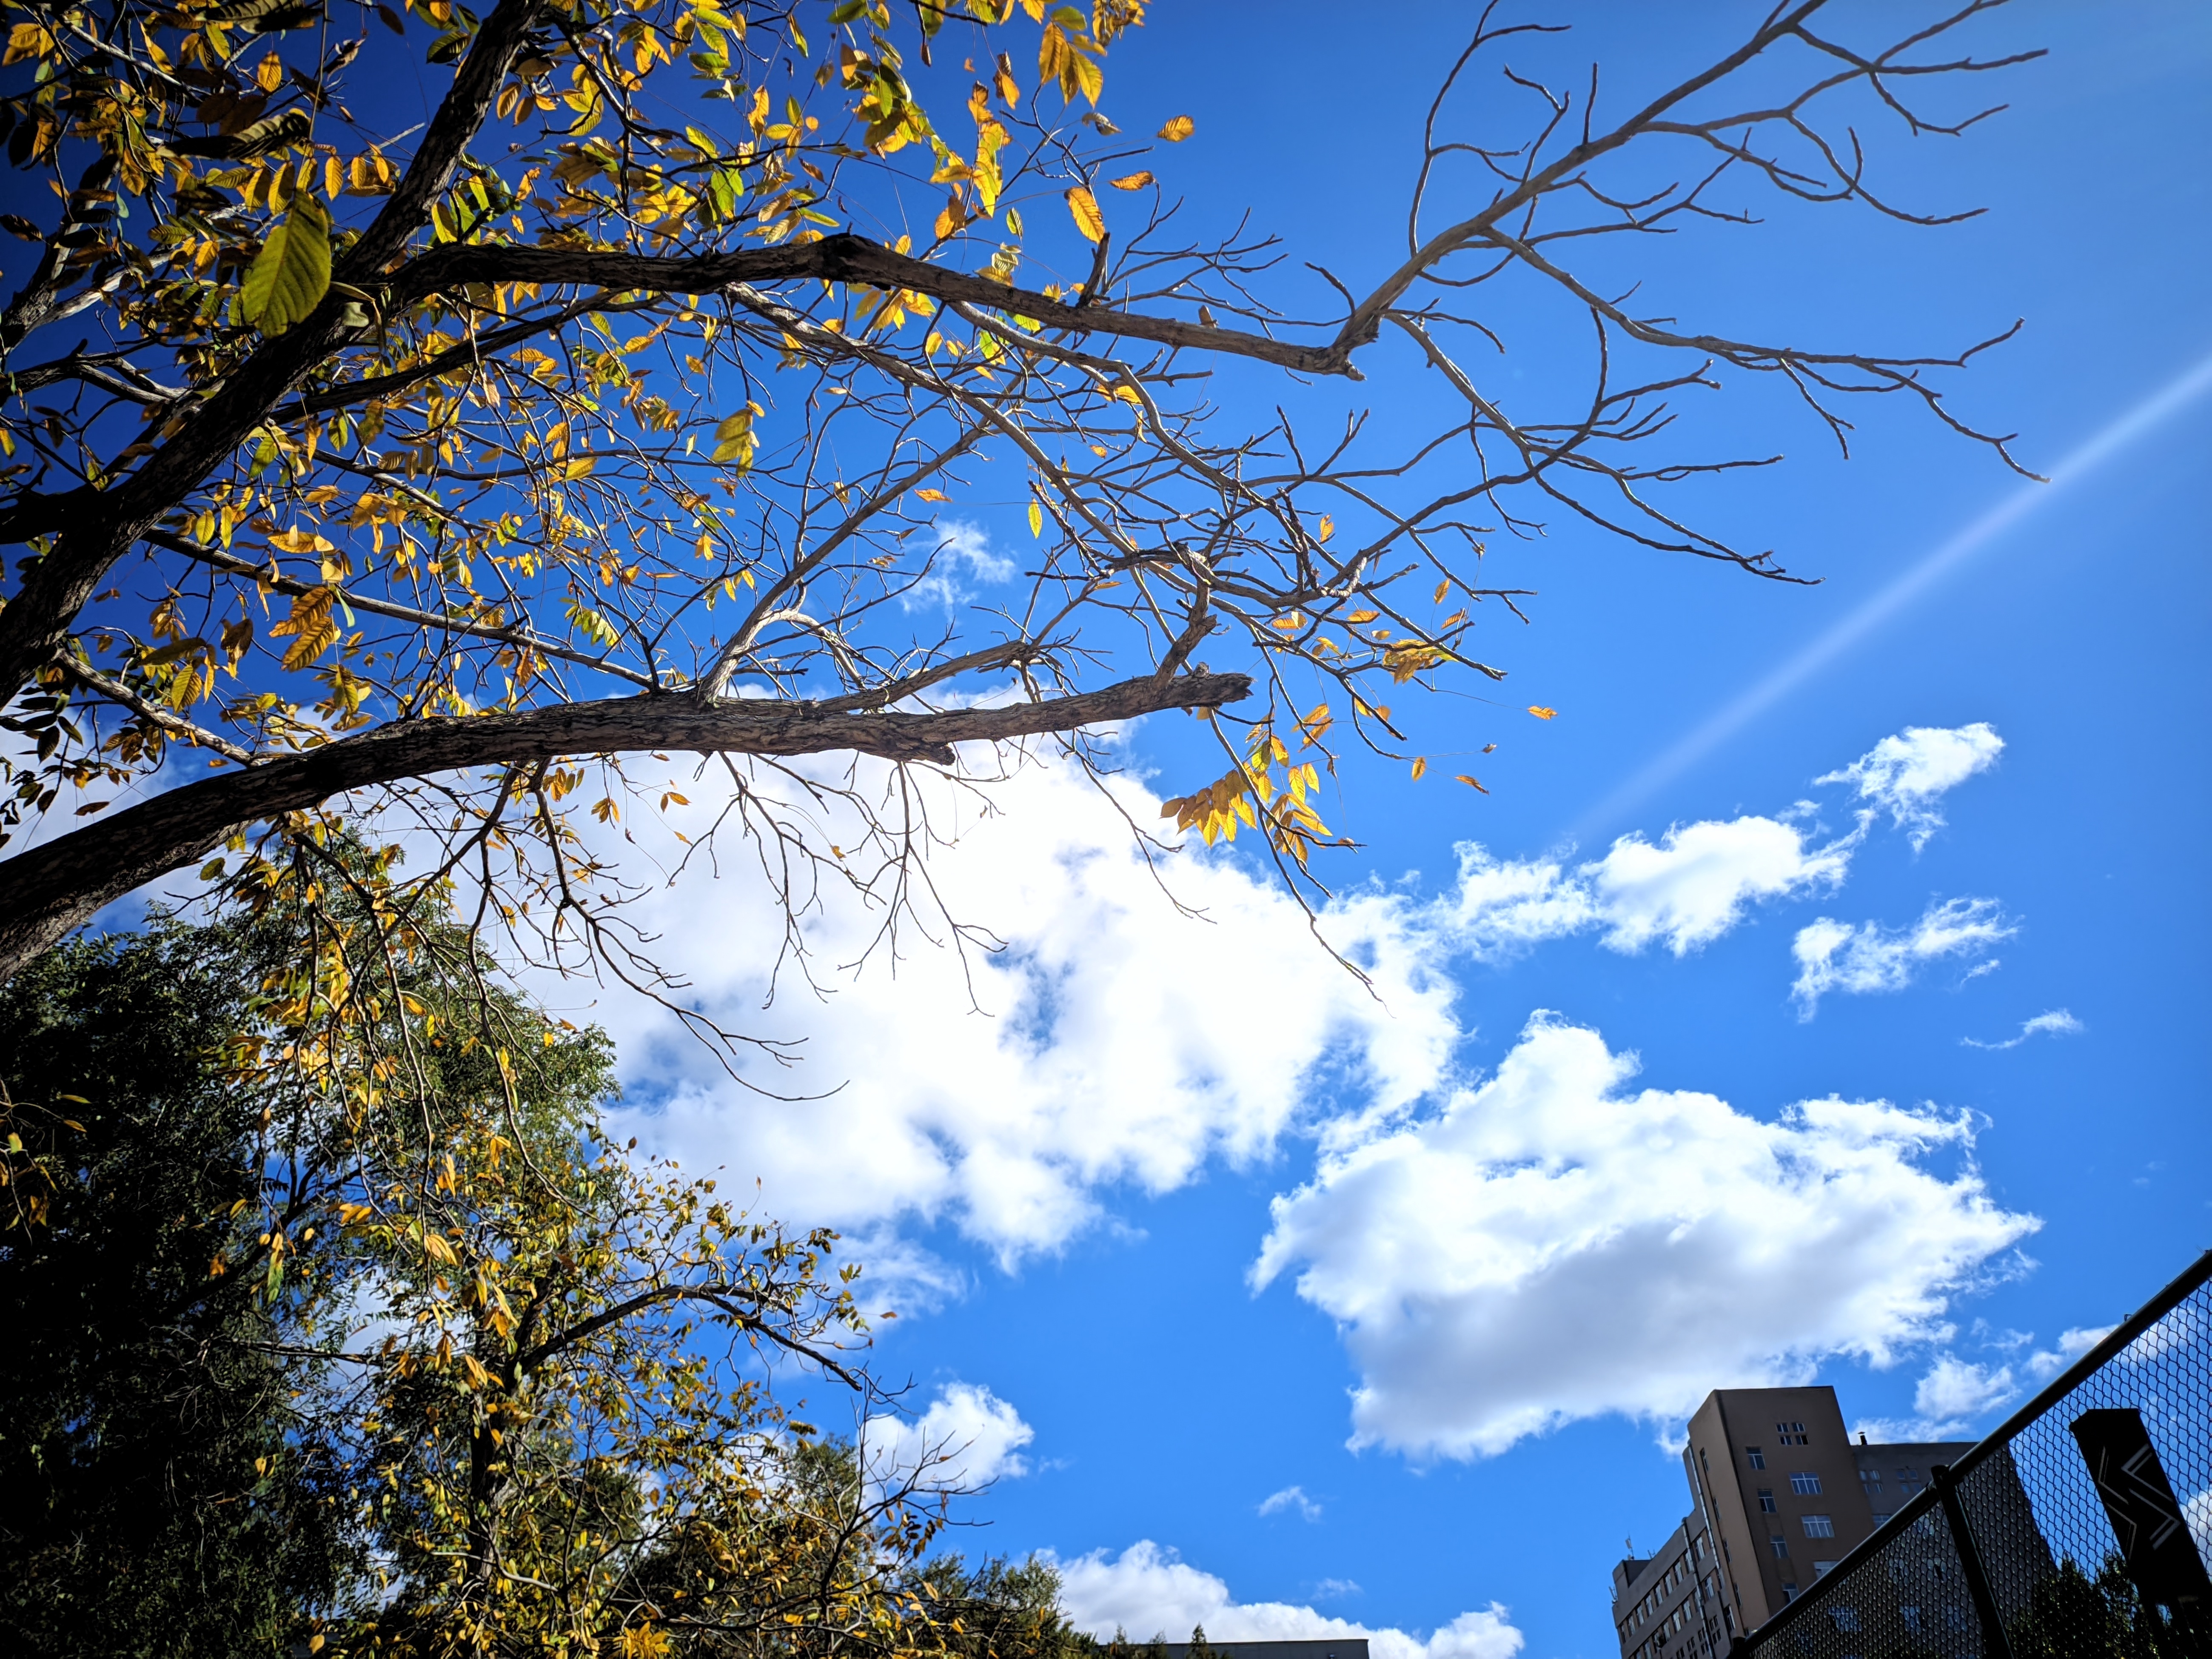 蓝天白云，落叶飘零，这是独属于秋天的浪漫。